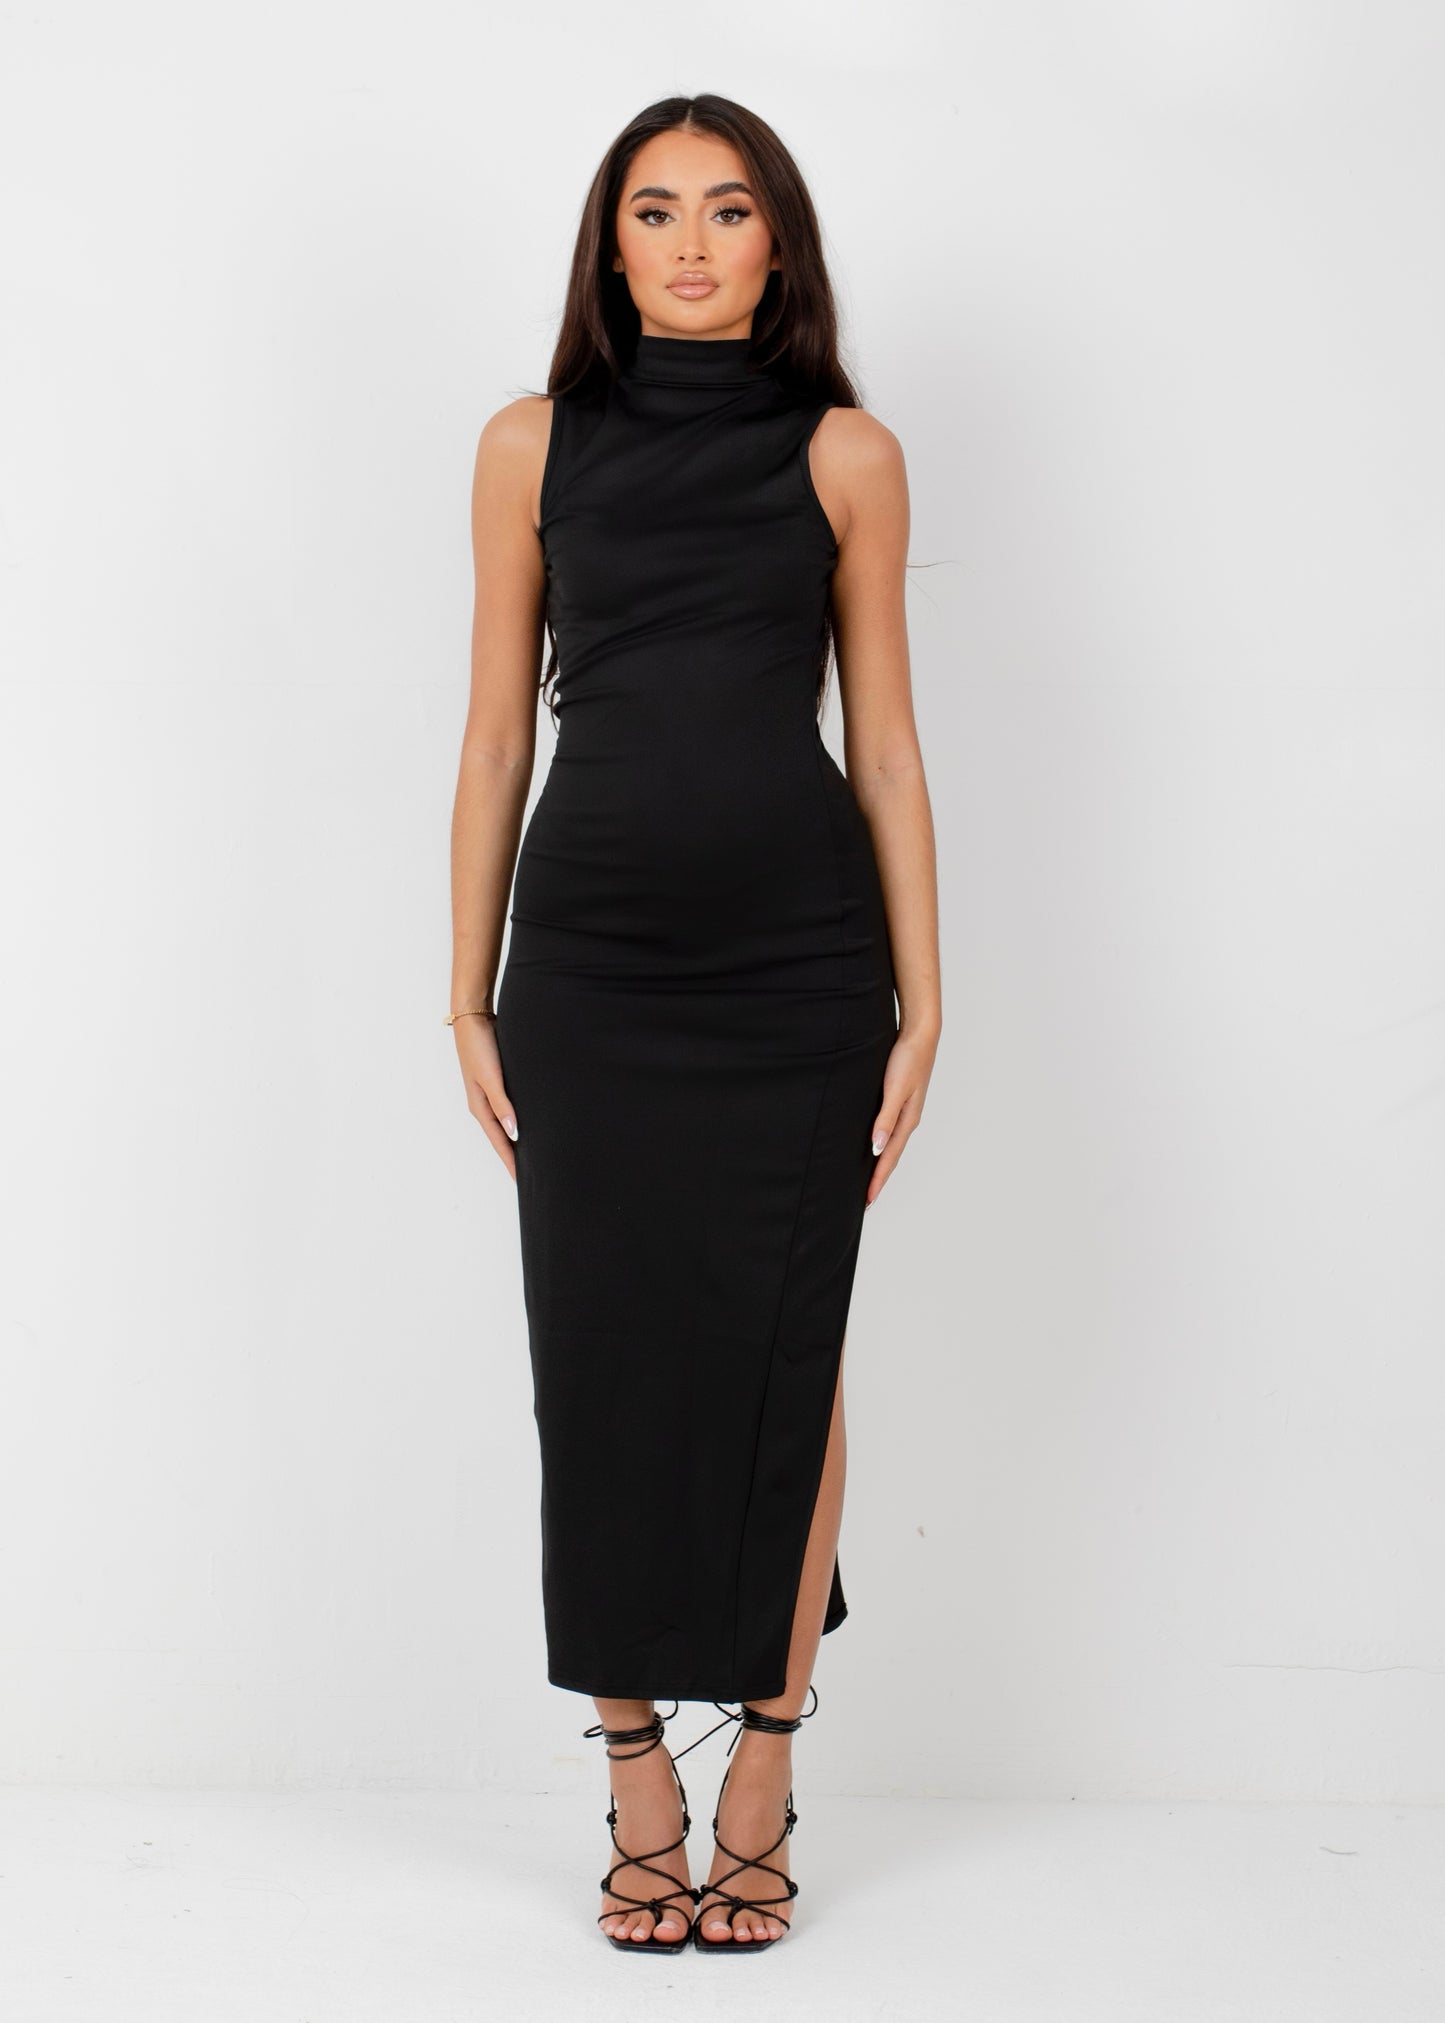 SOPHIA - Black High Neck Midi Dress